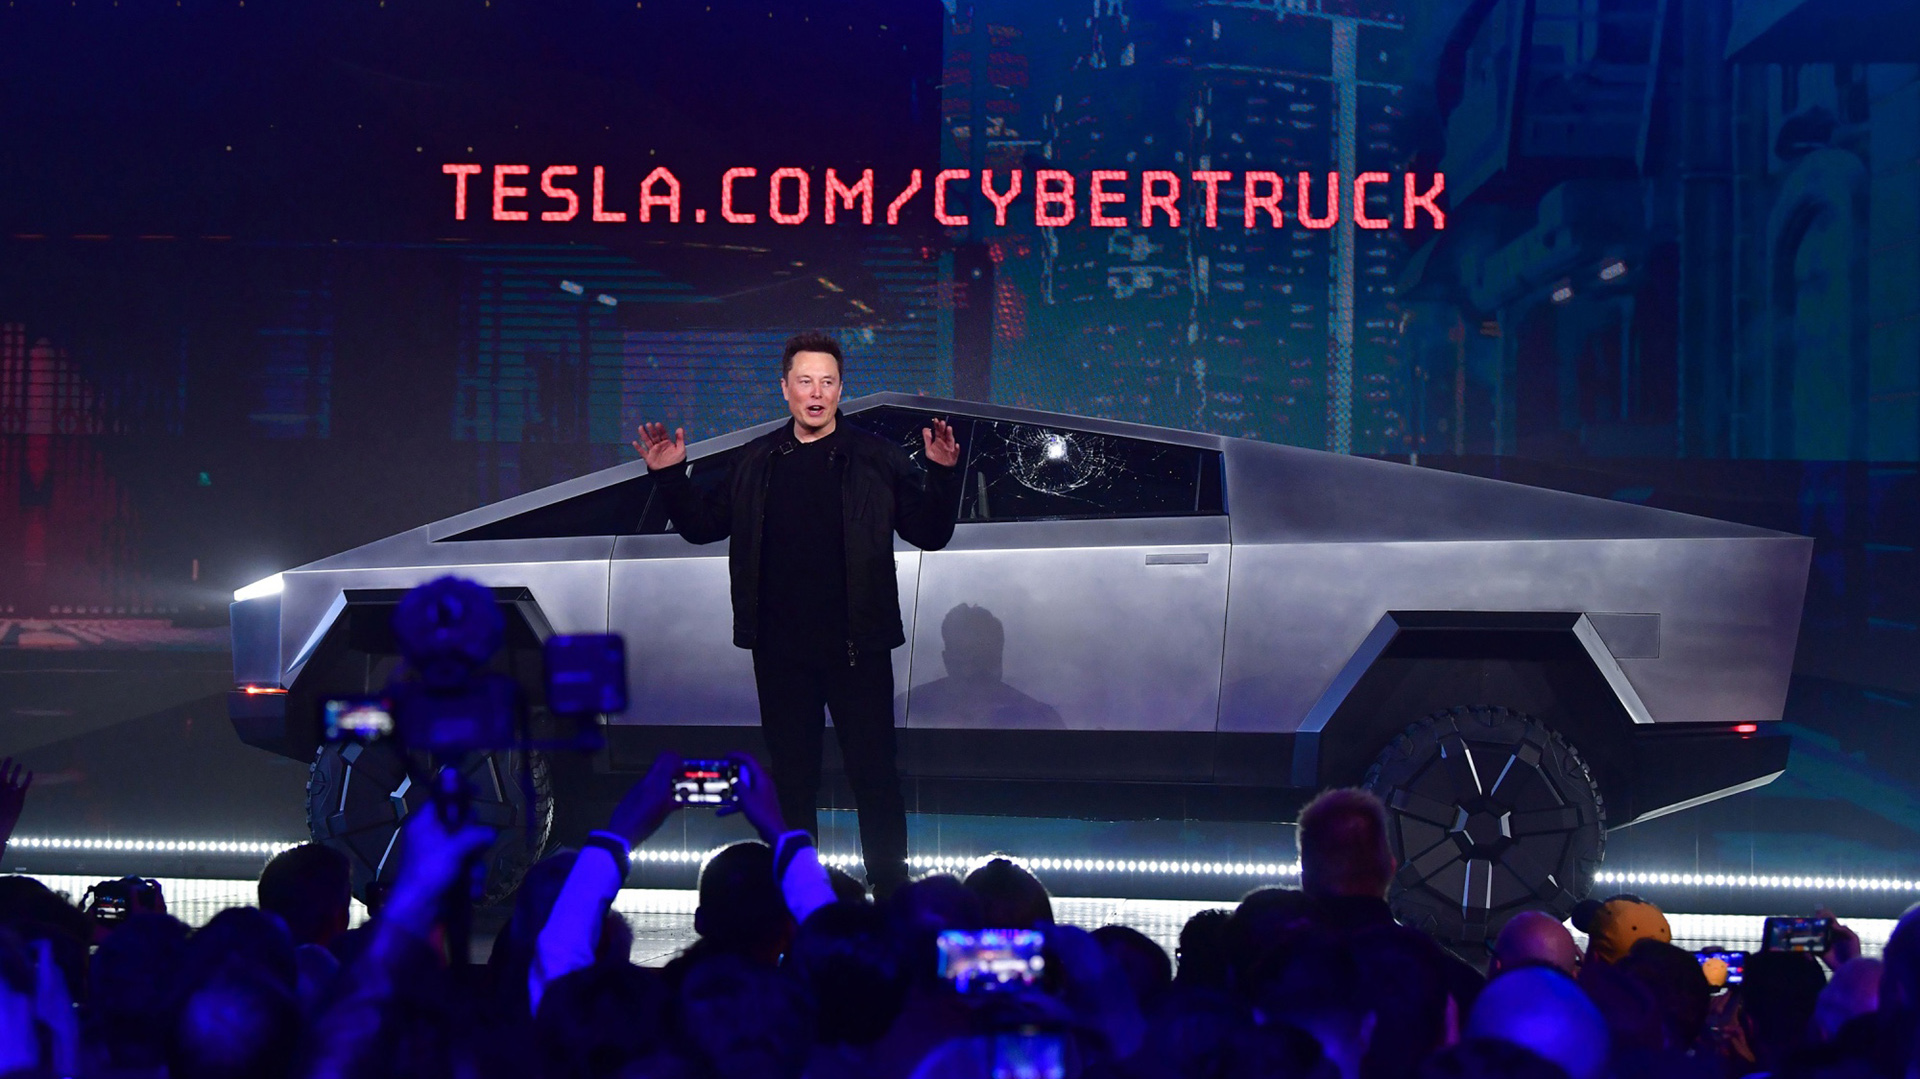 Elon Musk asegura que el Cybertruck podrá usarse para trasladarse sobre el agua a modo de bote.